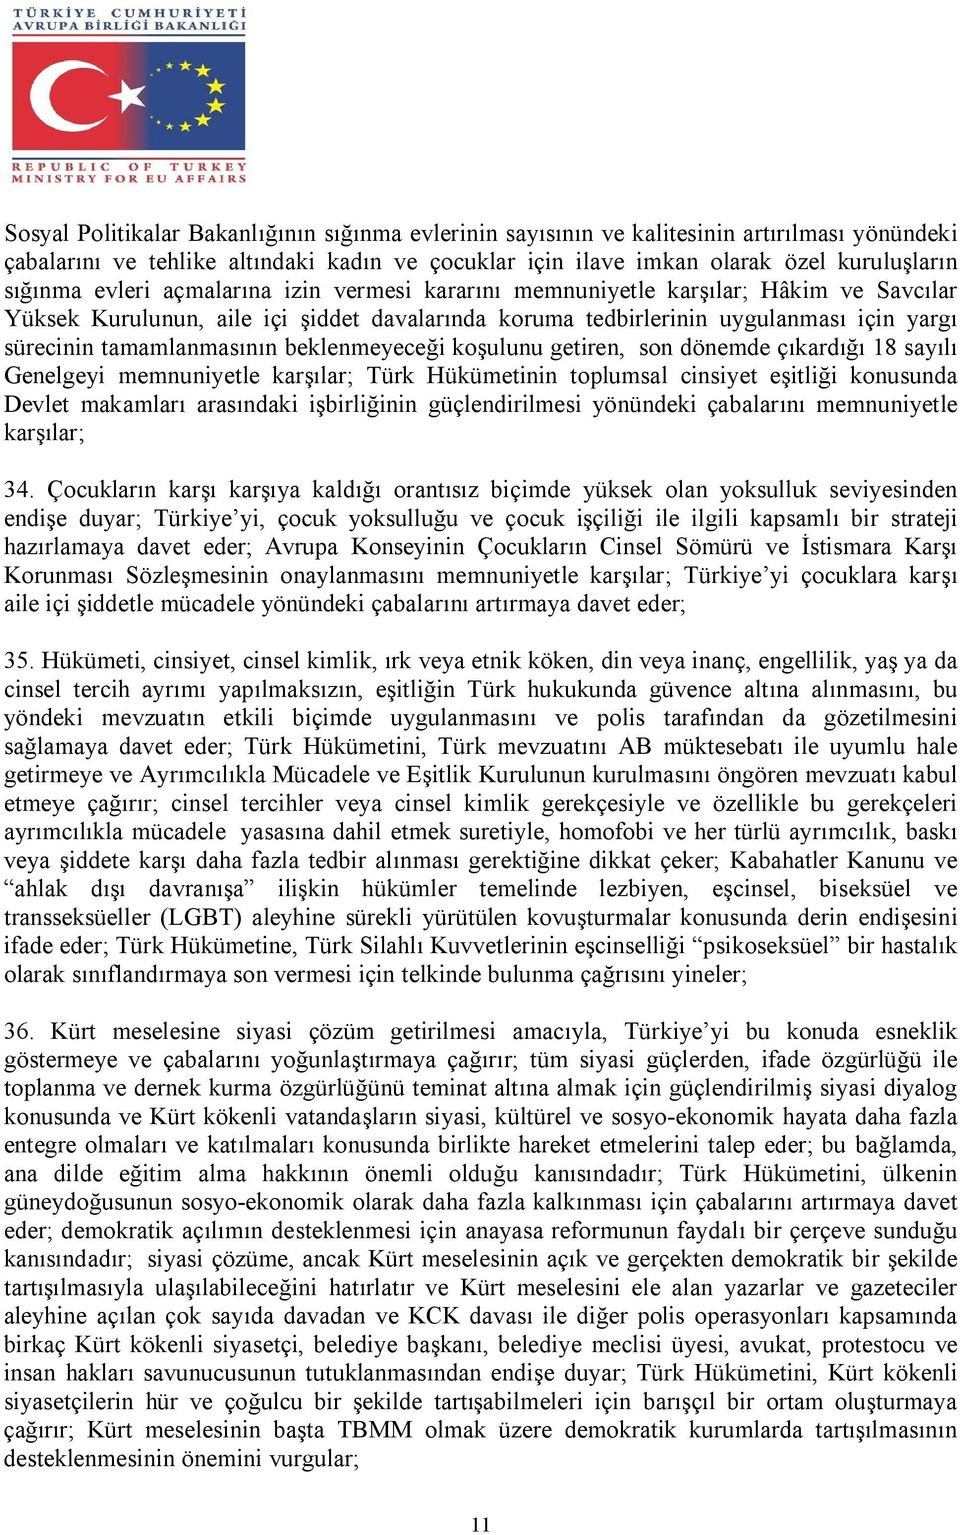 beklenmeyeceği koşulunu getiren, son dönemde çıkardığı 18 sayılı Genelgeyi memnuniyetle karşılar; Türk Hükümetinin toplumsal cinsiyet eşitliği konusunda Devlet makamları arasındaki işbirliğinin